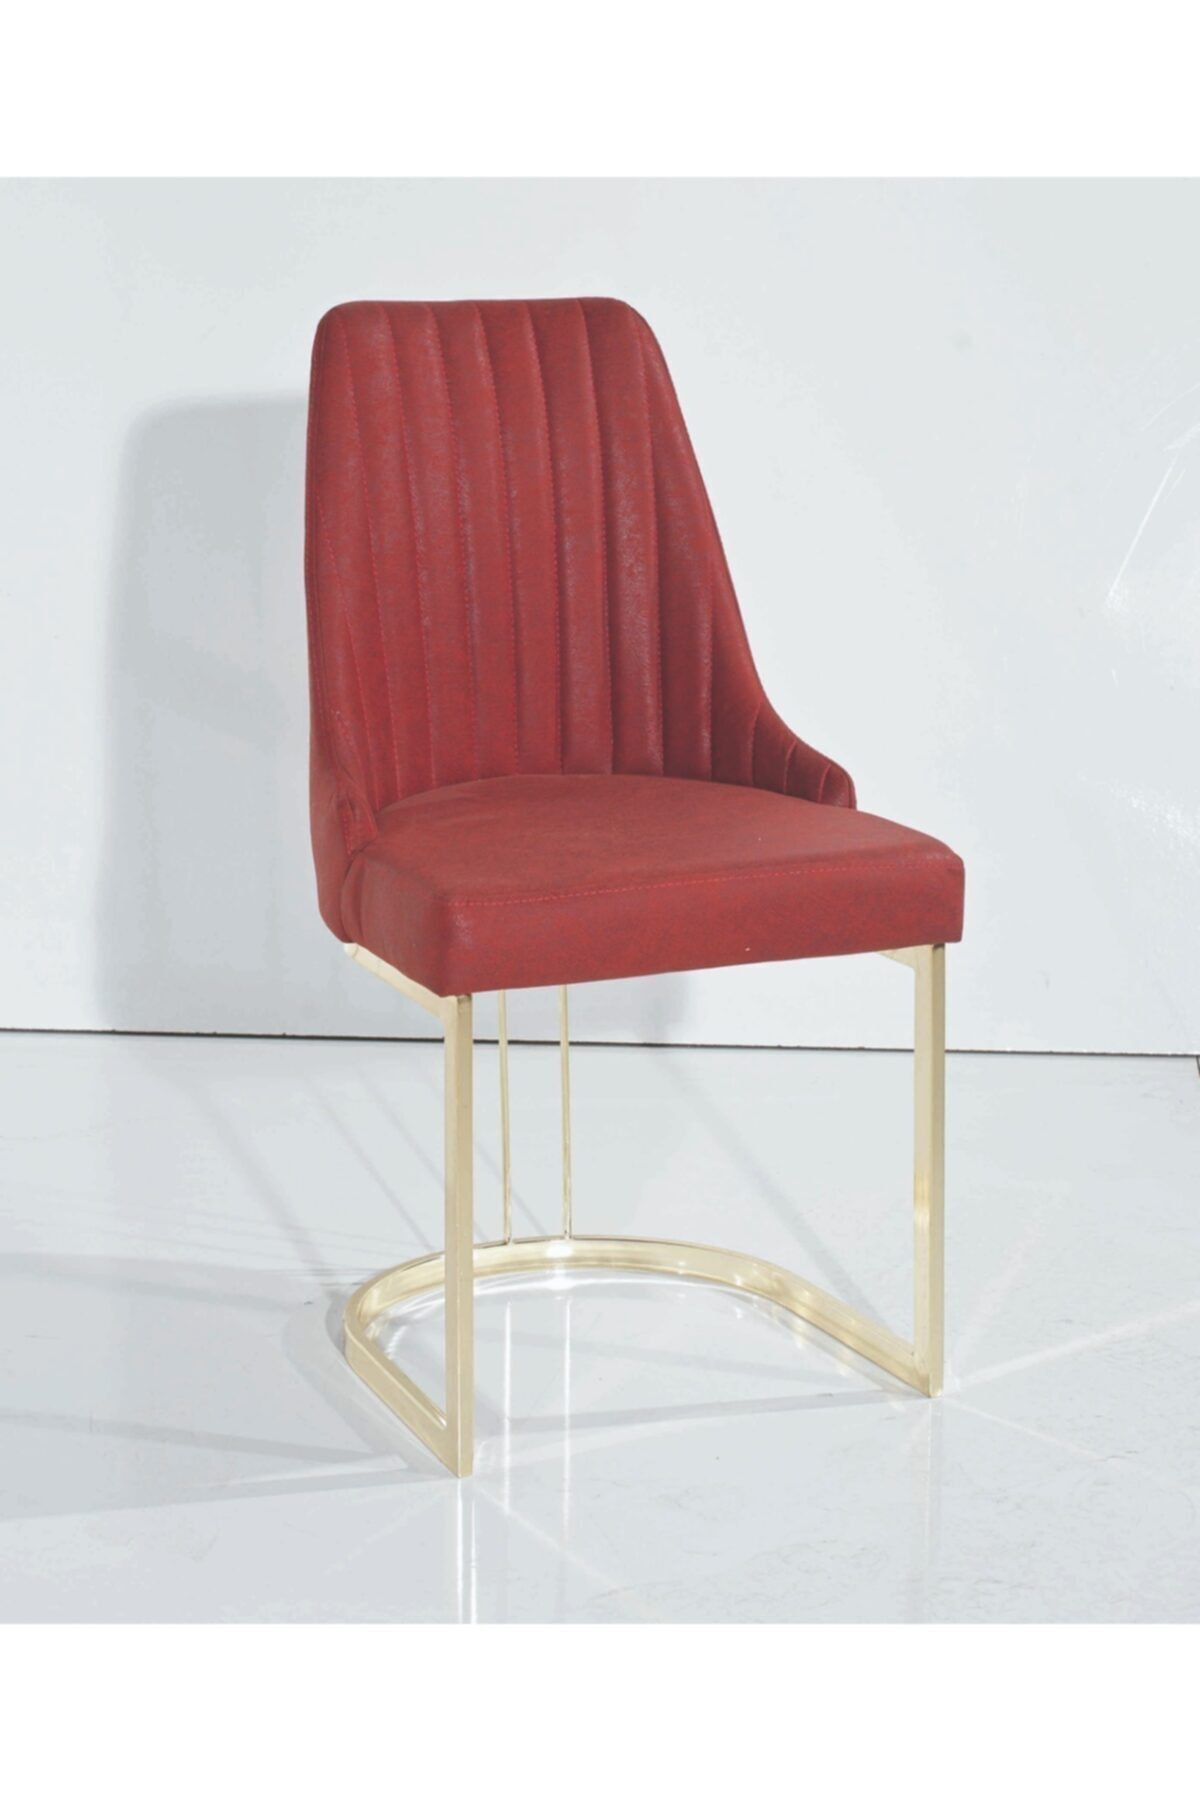 Formet Paris Sandalye Kırmızı